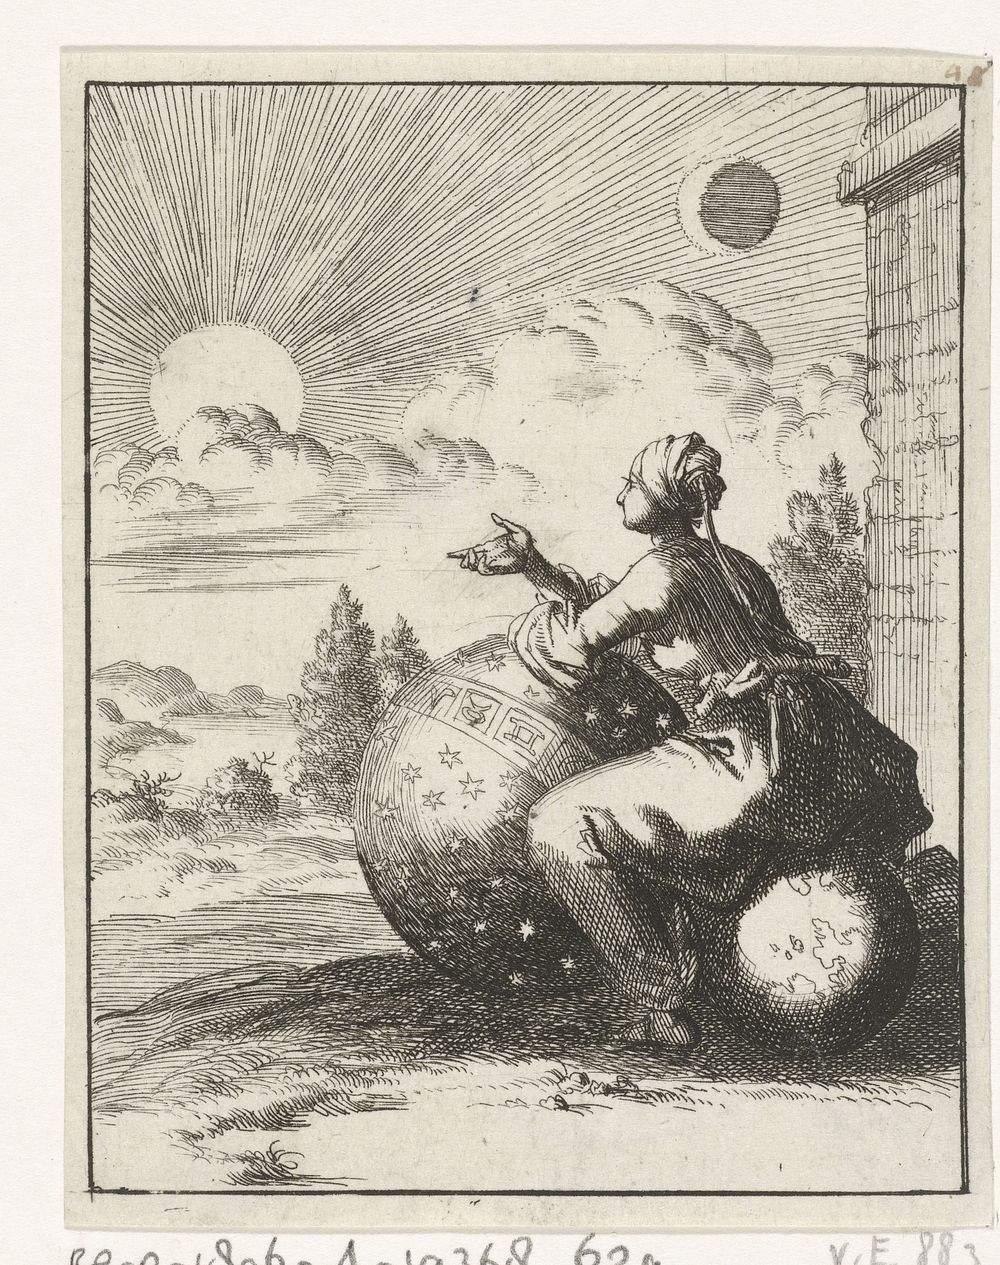 Vrouw bekijkt, zittend op een wereldbol en steunend op een hemelglobe, de ondergaande zon (1687) by Jan Luyken and Pieter…